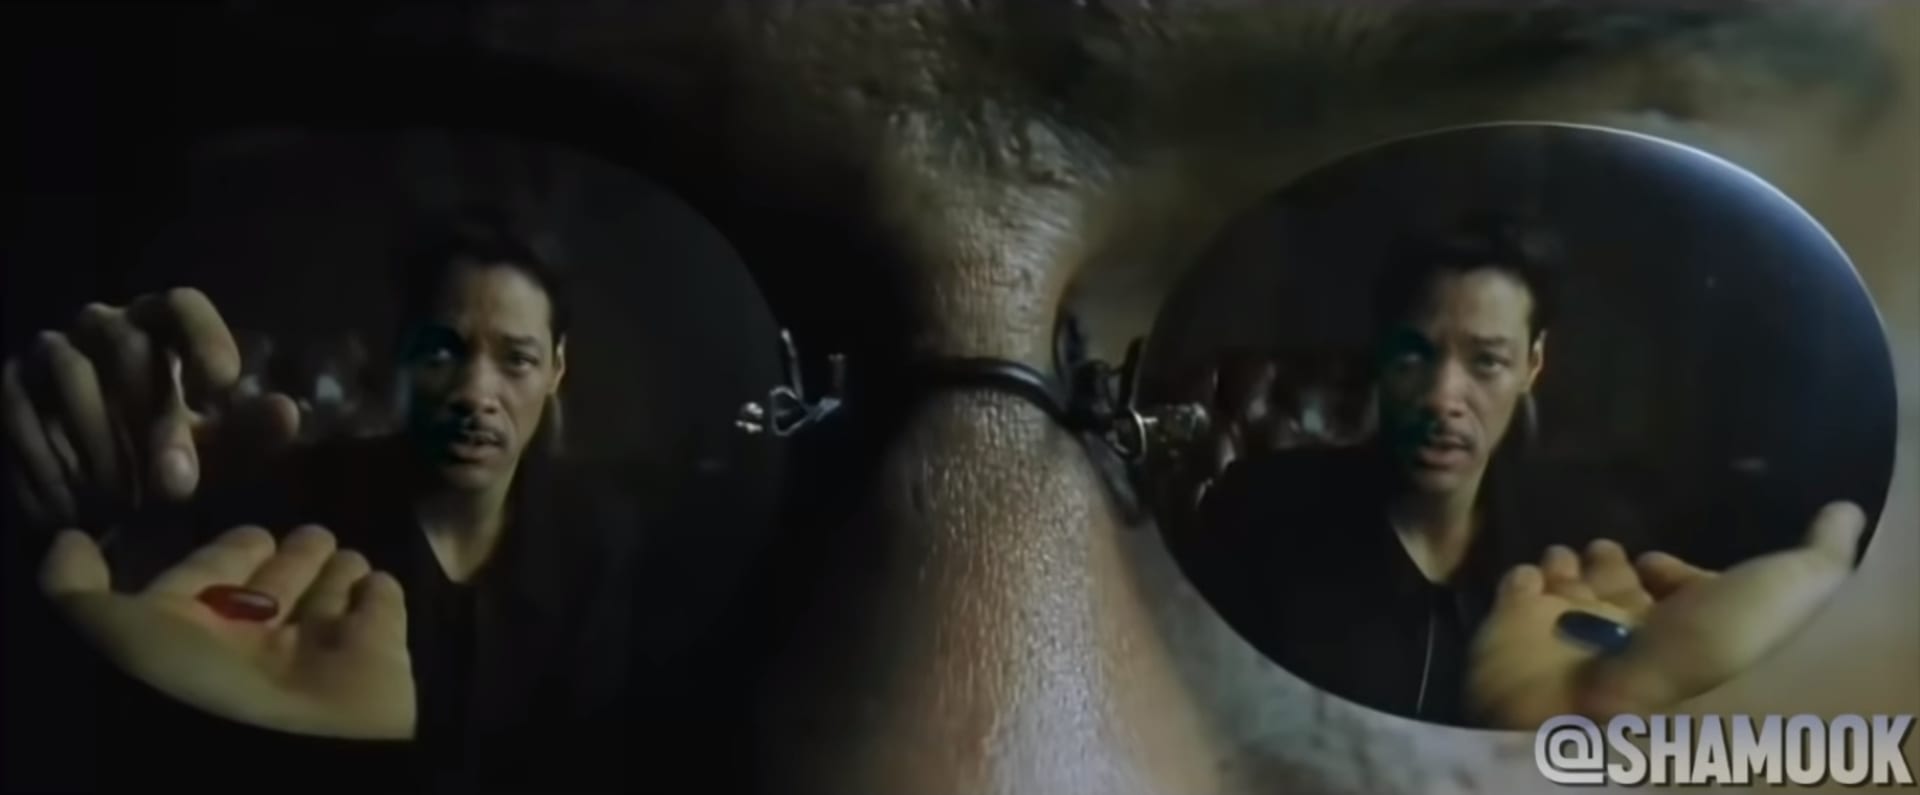 Deepfake - Will Smith v hlavní roli Matrixu